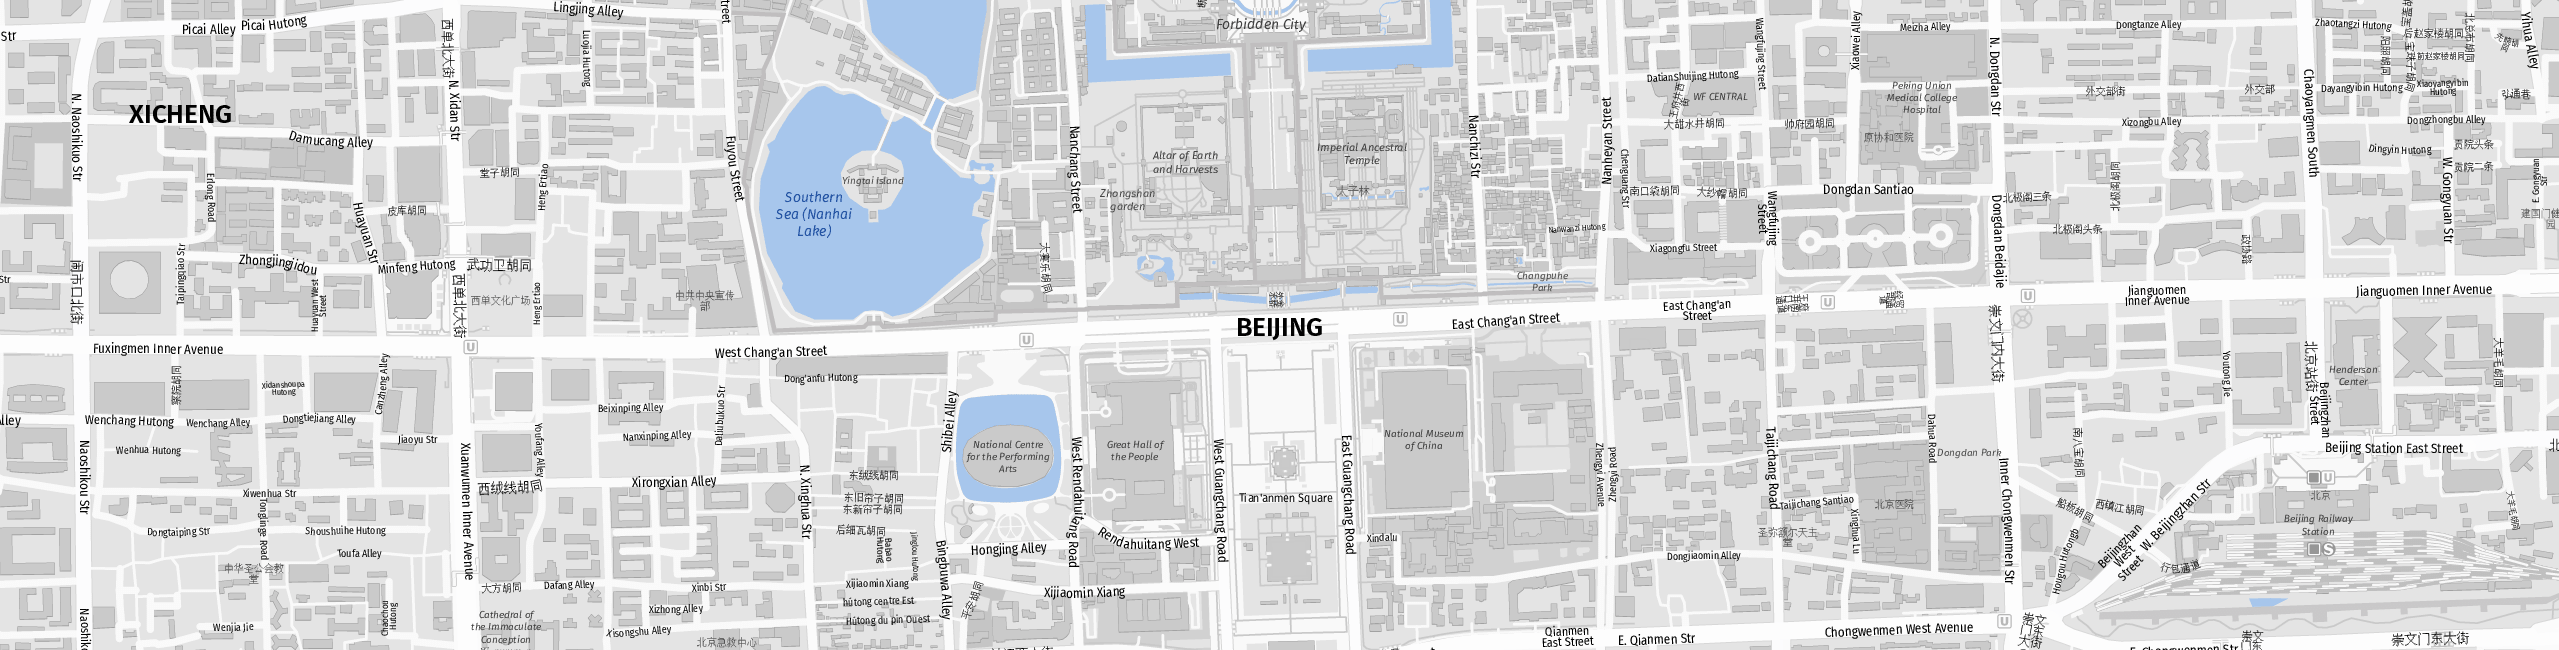 Stadtplan Peking zum Downloaden.